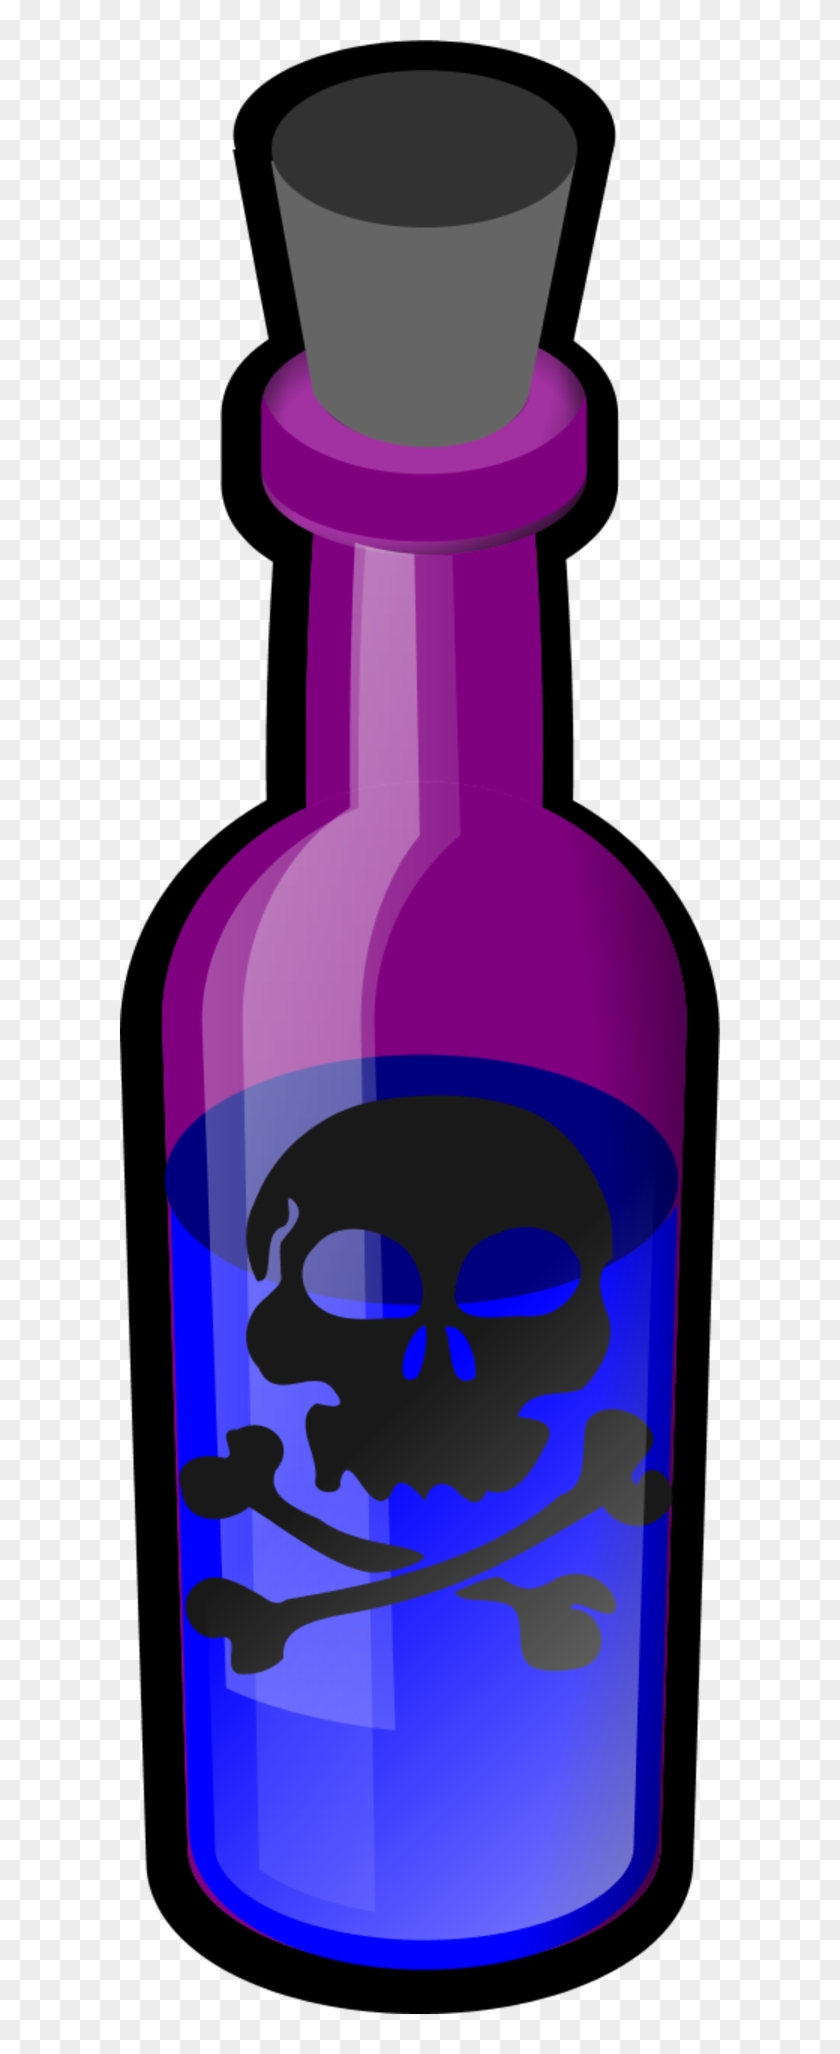 Poison Clip Art - Poison Bottle Clip Art #210644